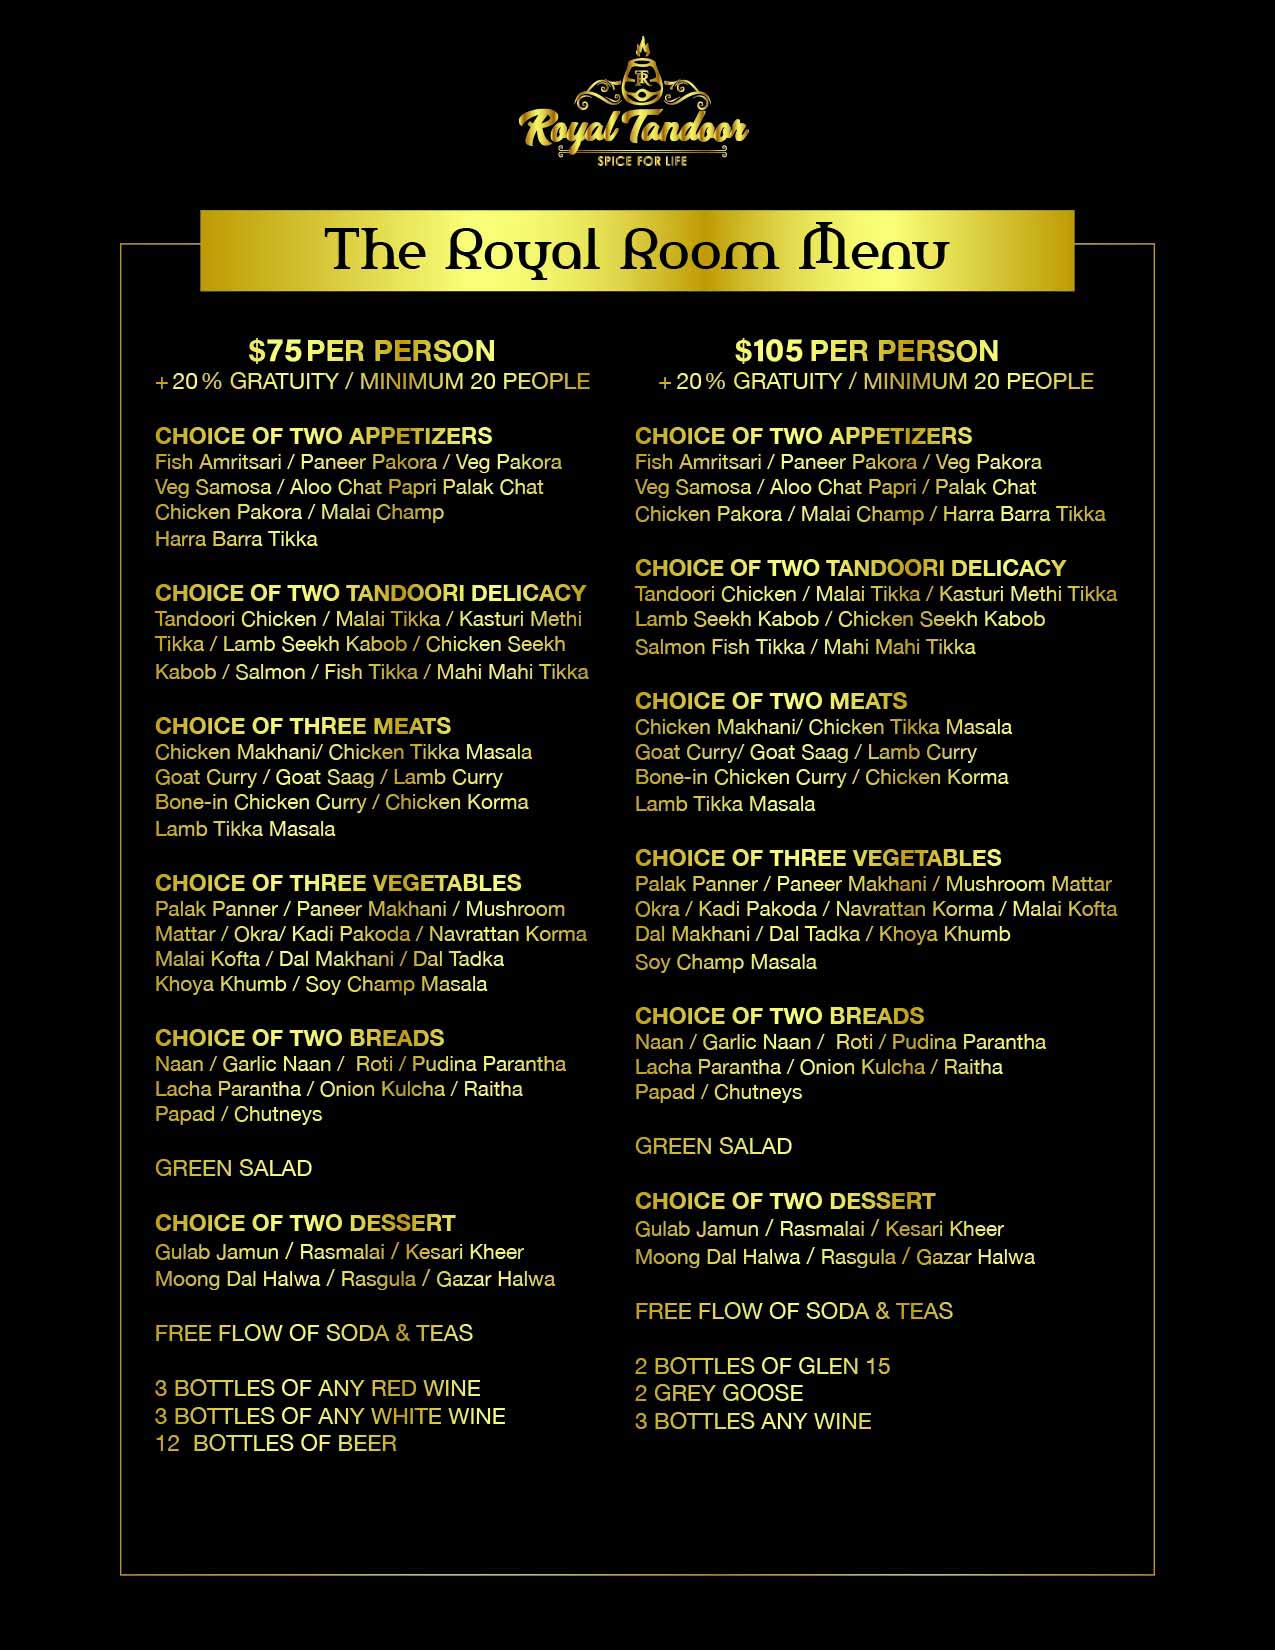 Royal tandoor menu - Maryland - Bethesda ID1518212